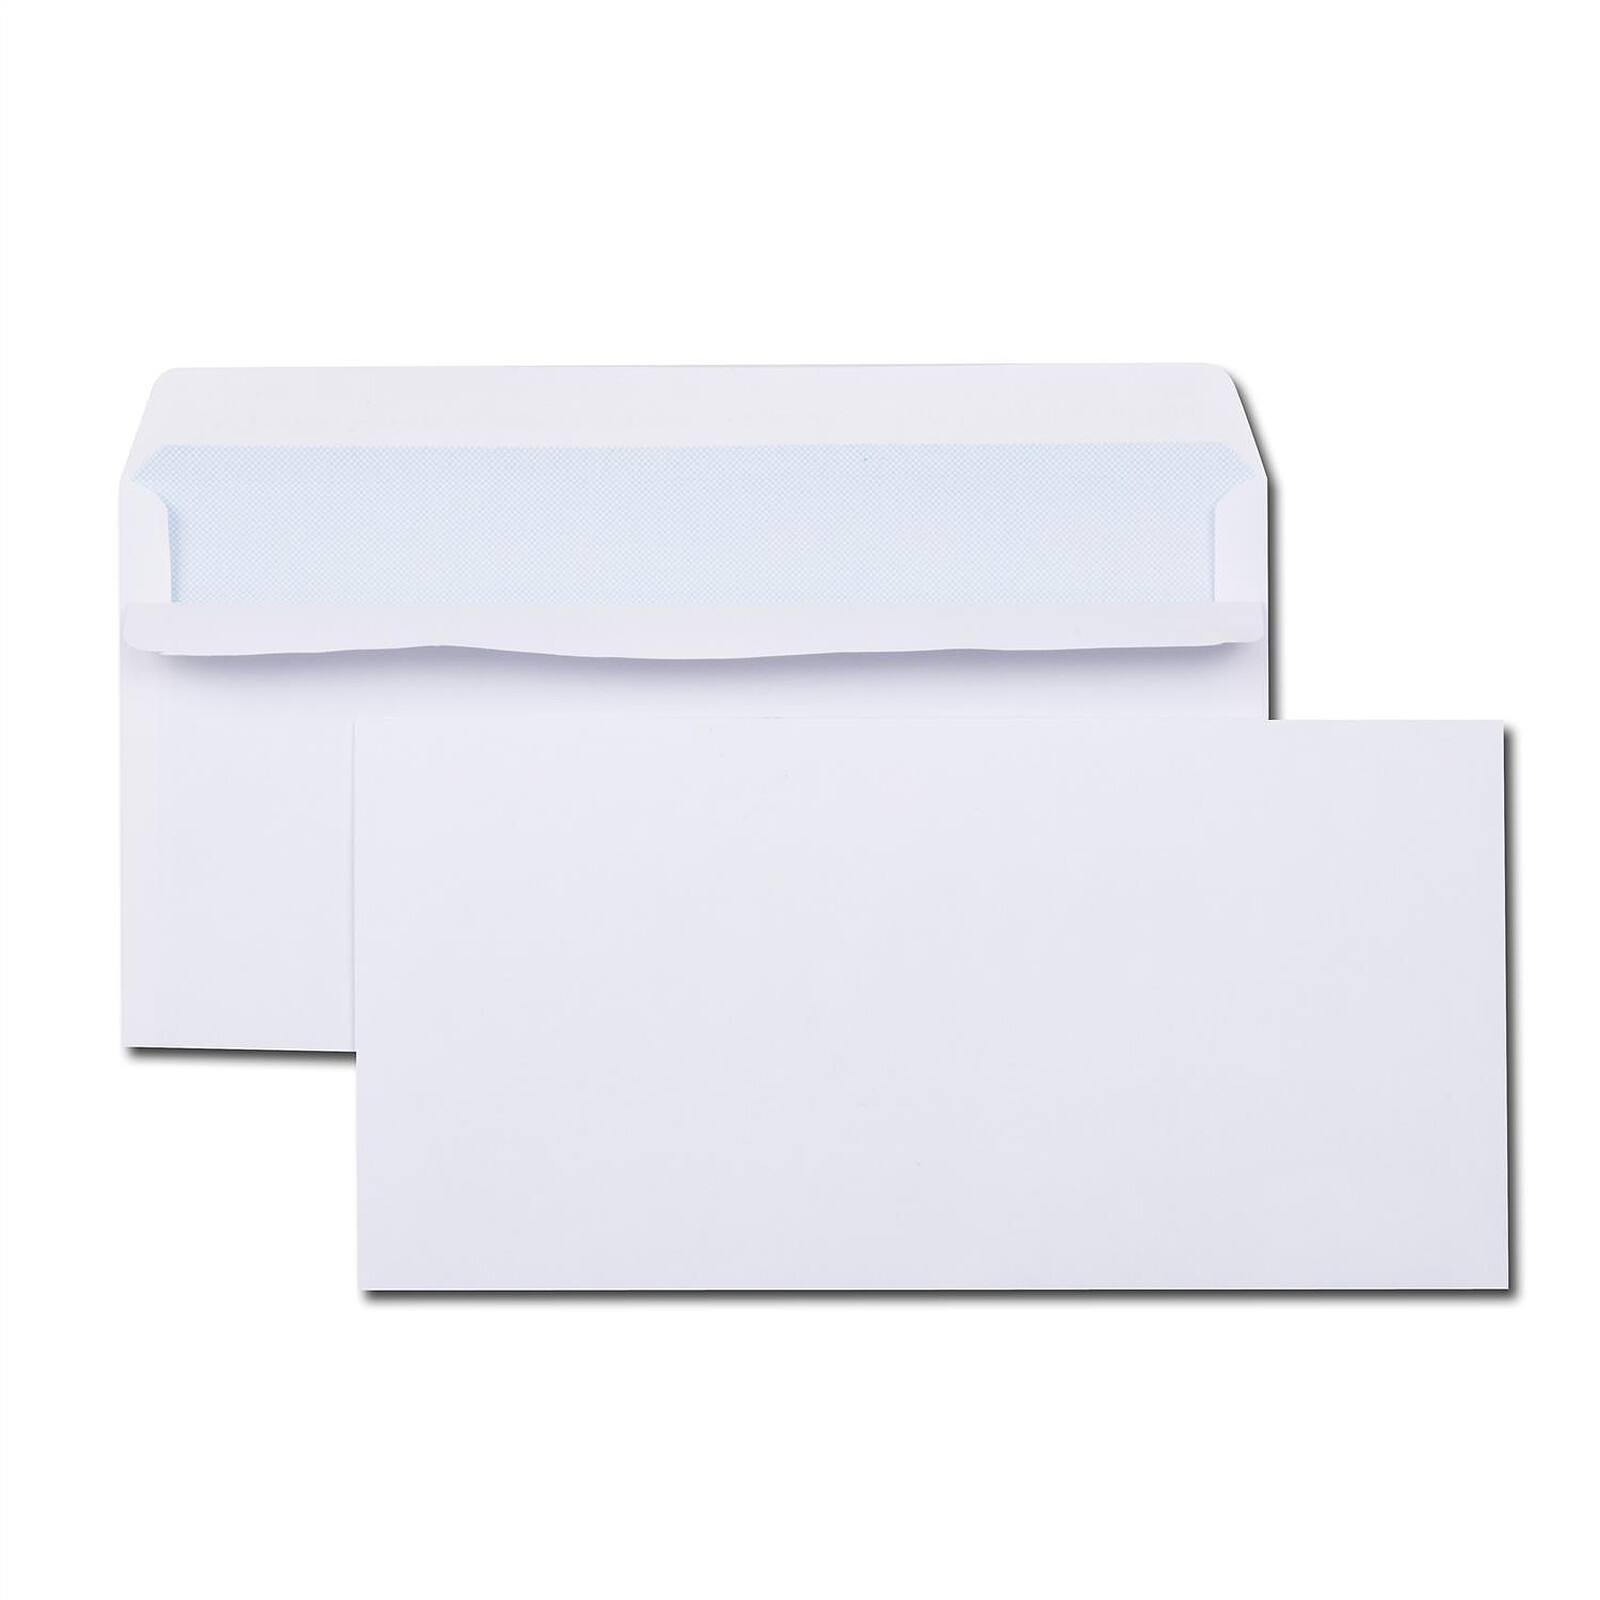 Paquet de 100 enveloppes blanches DL 110x220 80 g/m² bande de